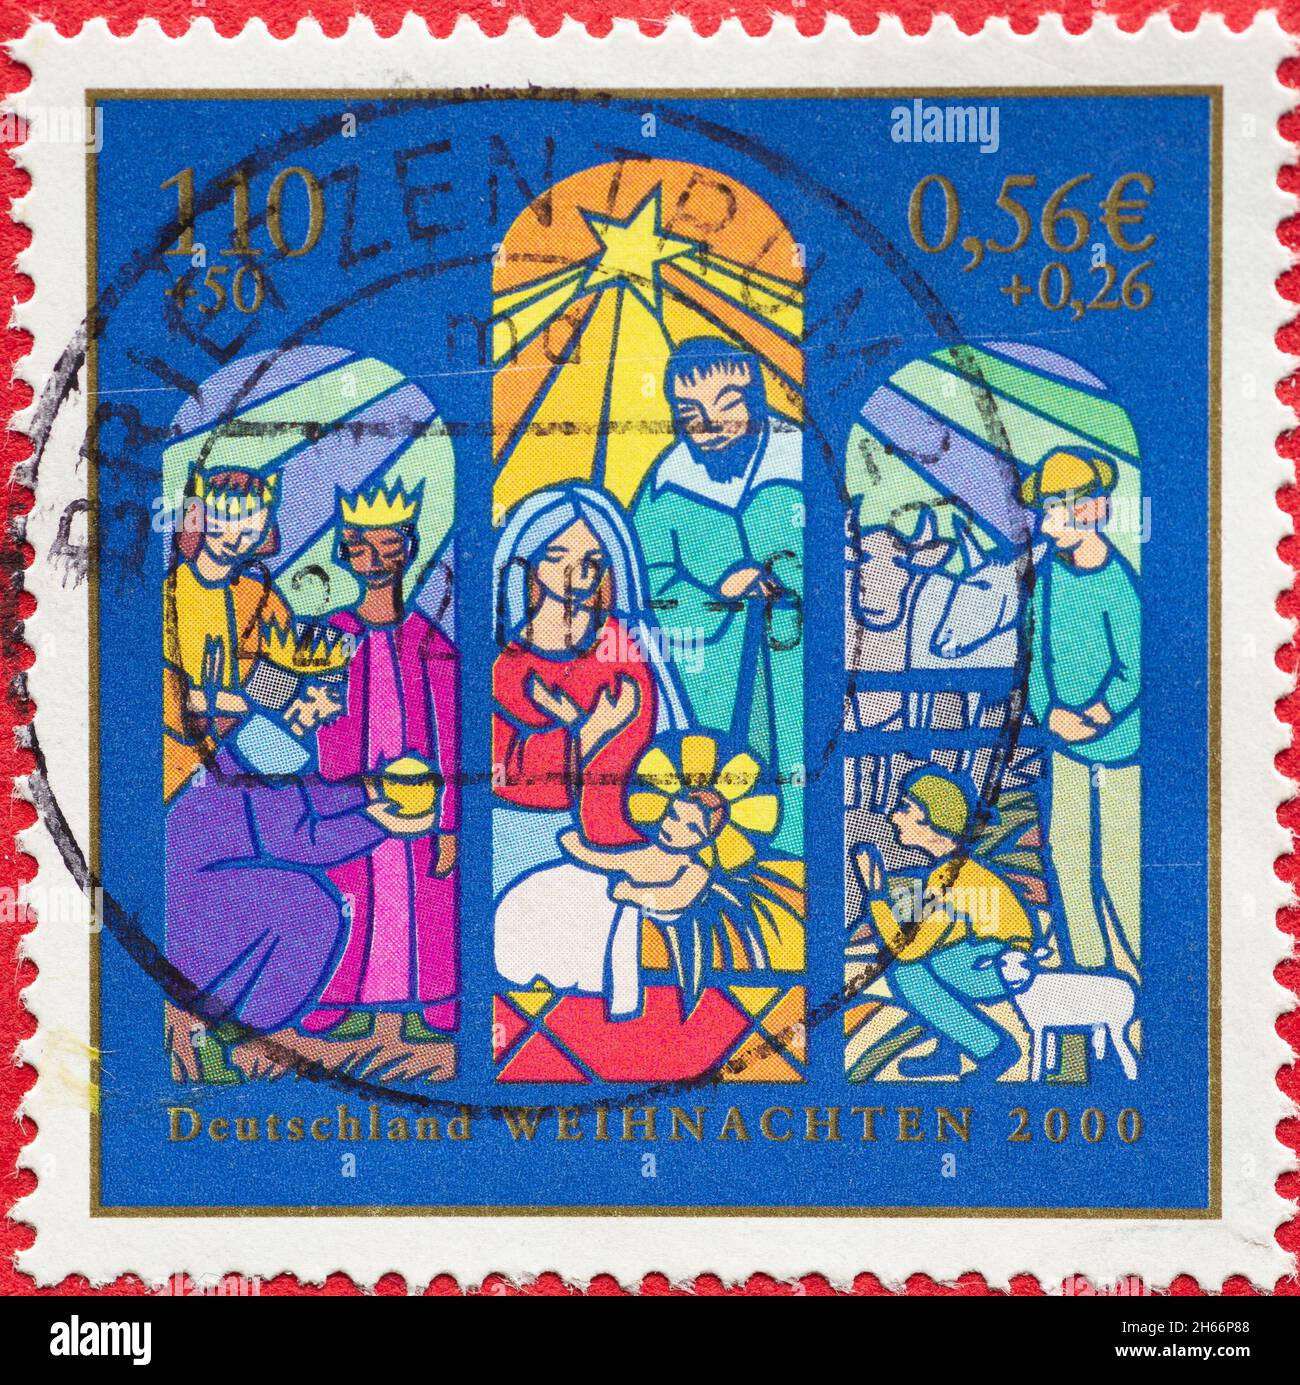 ALLEMAGNE - VERS 2000: Timbre-poste de l'Allemagne, montrant une fenêtre avec la naissance du Christ, les trois rois, les bergers.Noël posta Banque D'Images